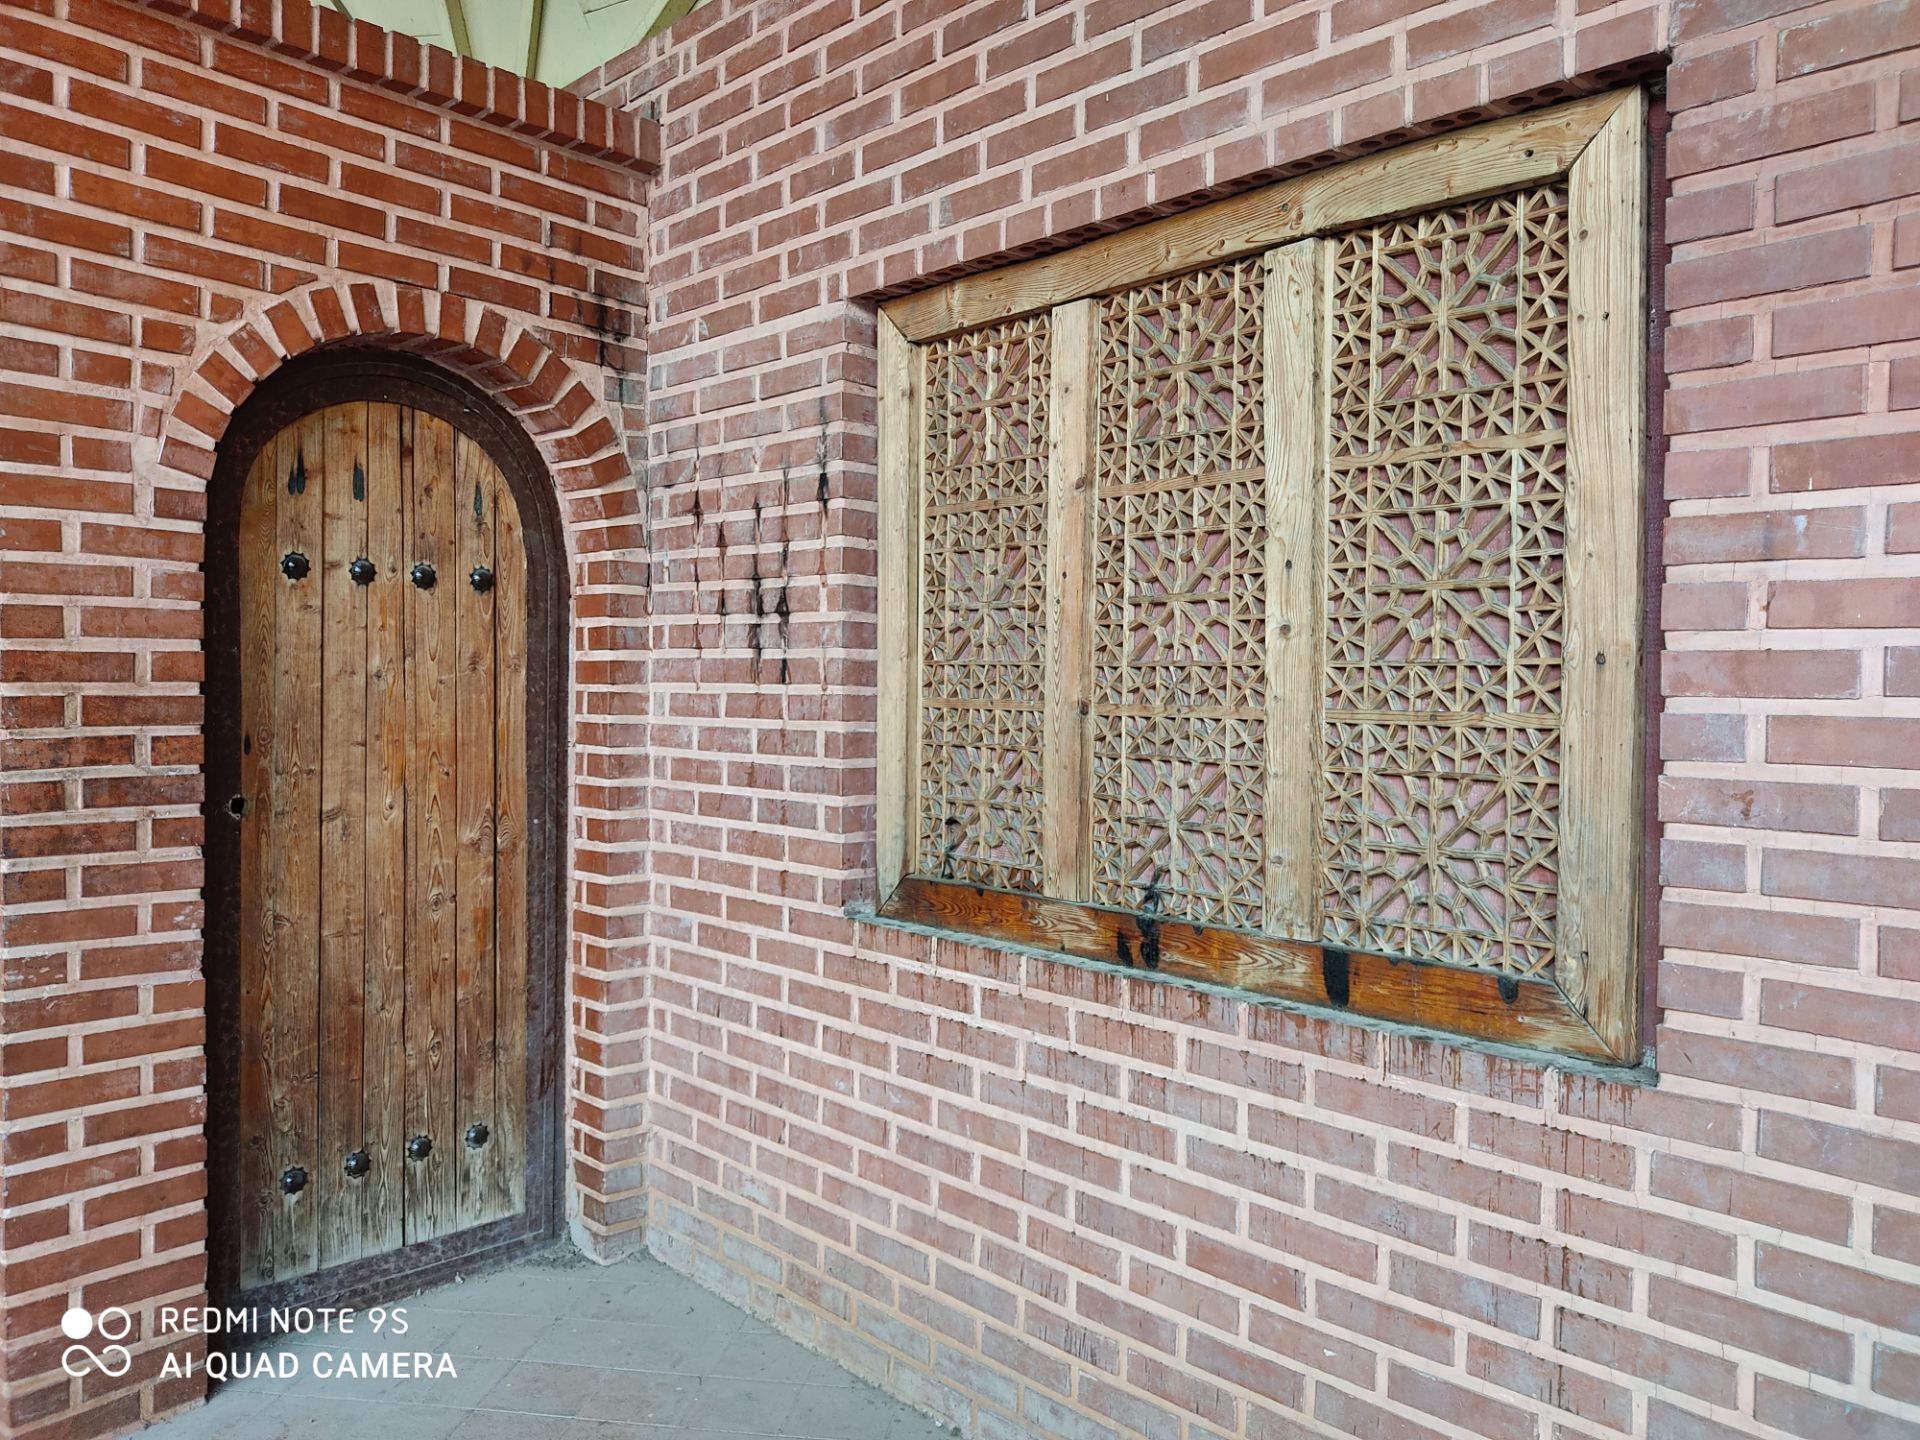 نمونه عکس ردمی نوت 9 اس - آجرنما با در و پنجره چوبی